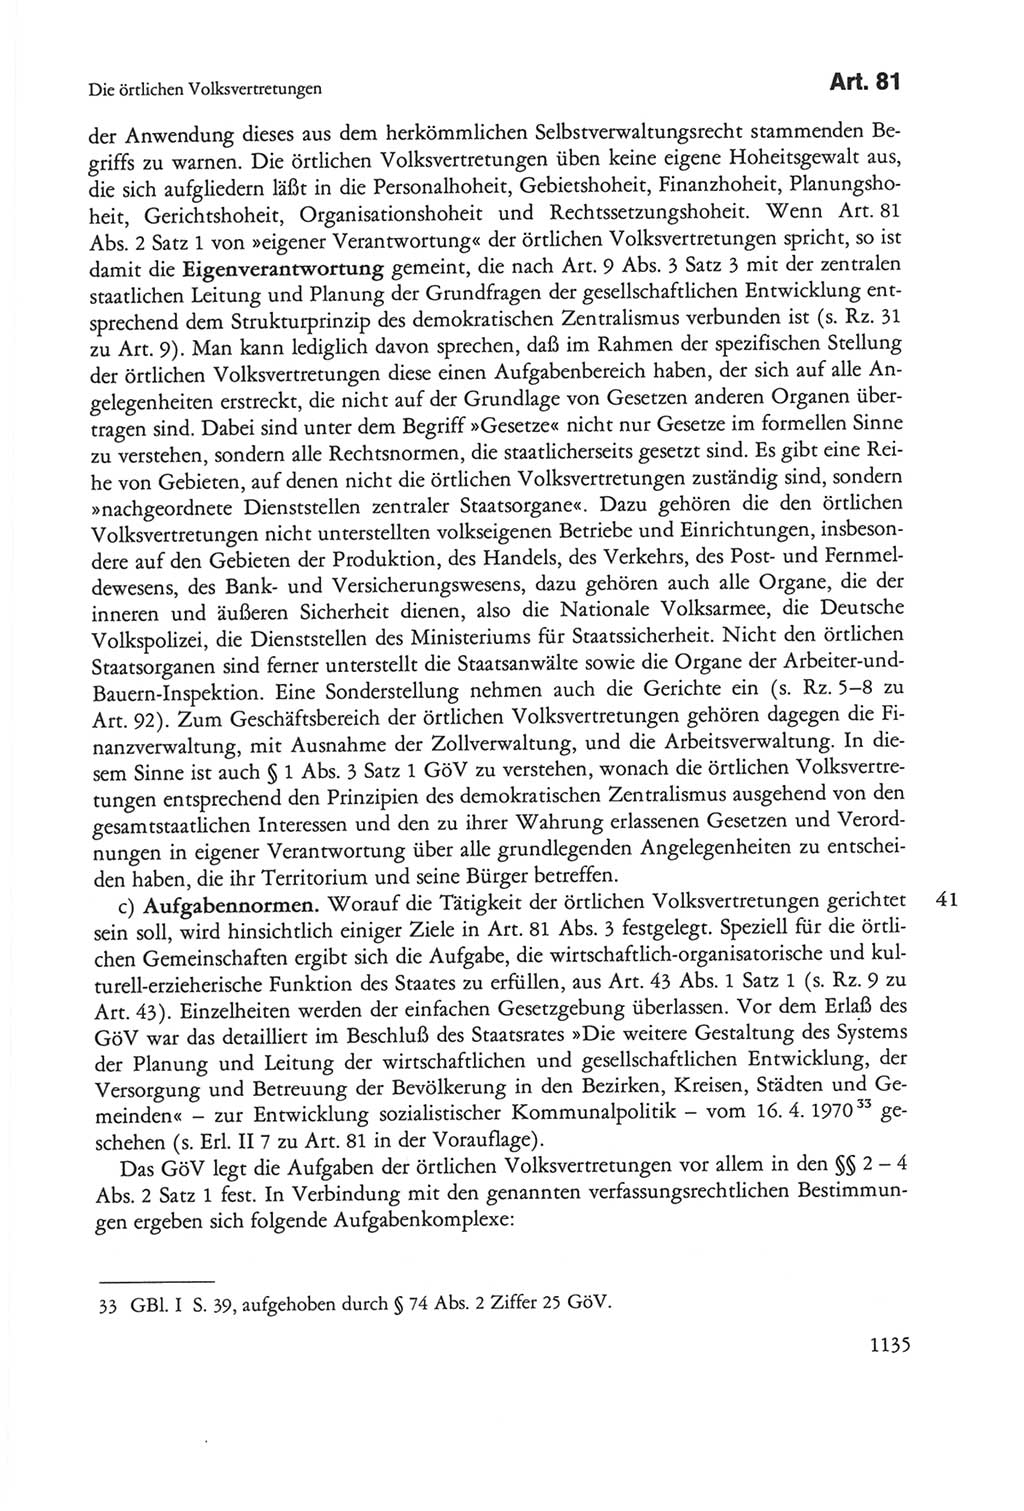 Die sozialistische Verfassung der Deutschen Demokratischen Republik (DDR), Kommentar mit einem Nachtrag 1997, Seite 1135 (Soz. Verf. DDR Komm. Nachtr. 1997, S. 1135)